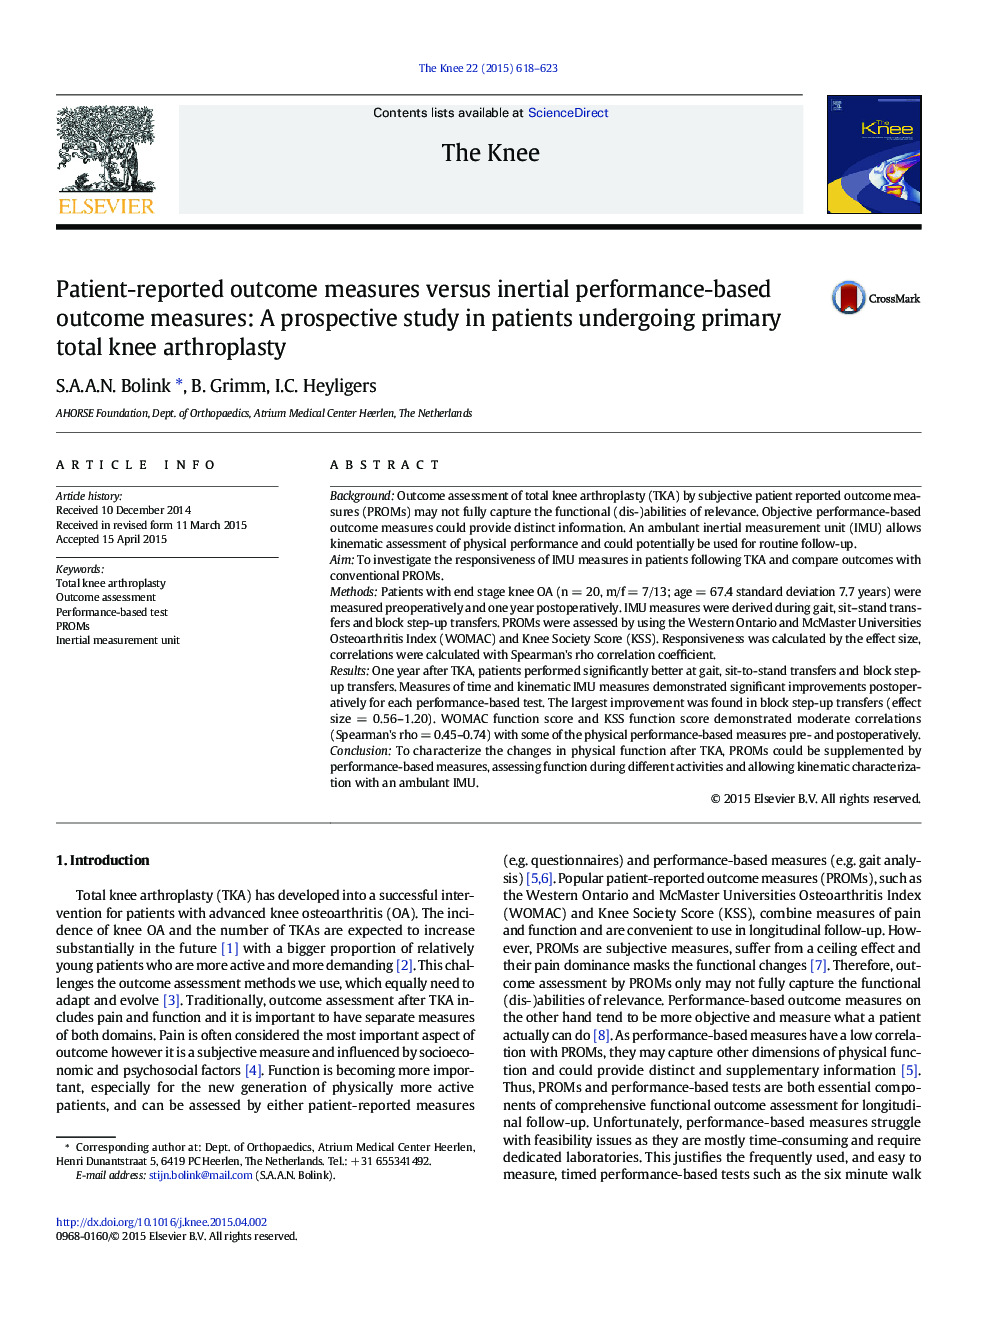 مقادیر گزارش شده توسط بیمار در مقایسه با نتایج ارزیابی مبتنی بر عملکرد انتگرال: یک مطالعه آینده نگر در بیماران تحت درمان با آرتروپلاستی کل زانو اولیه 